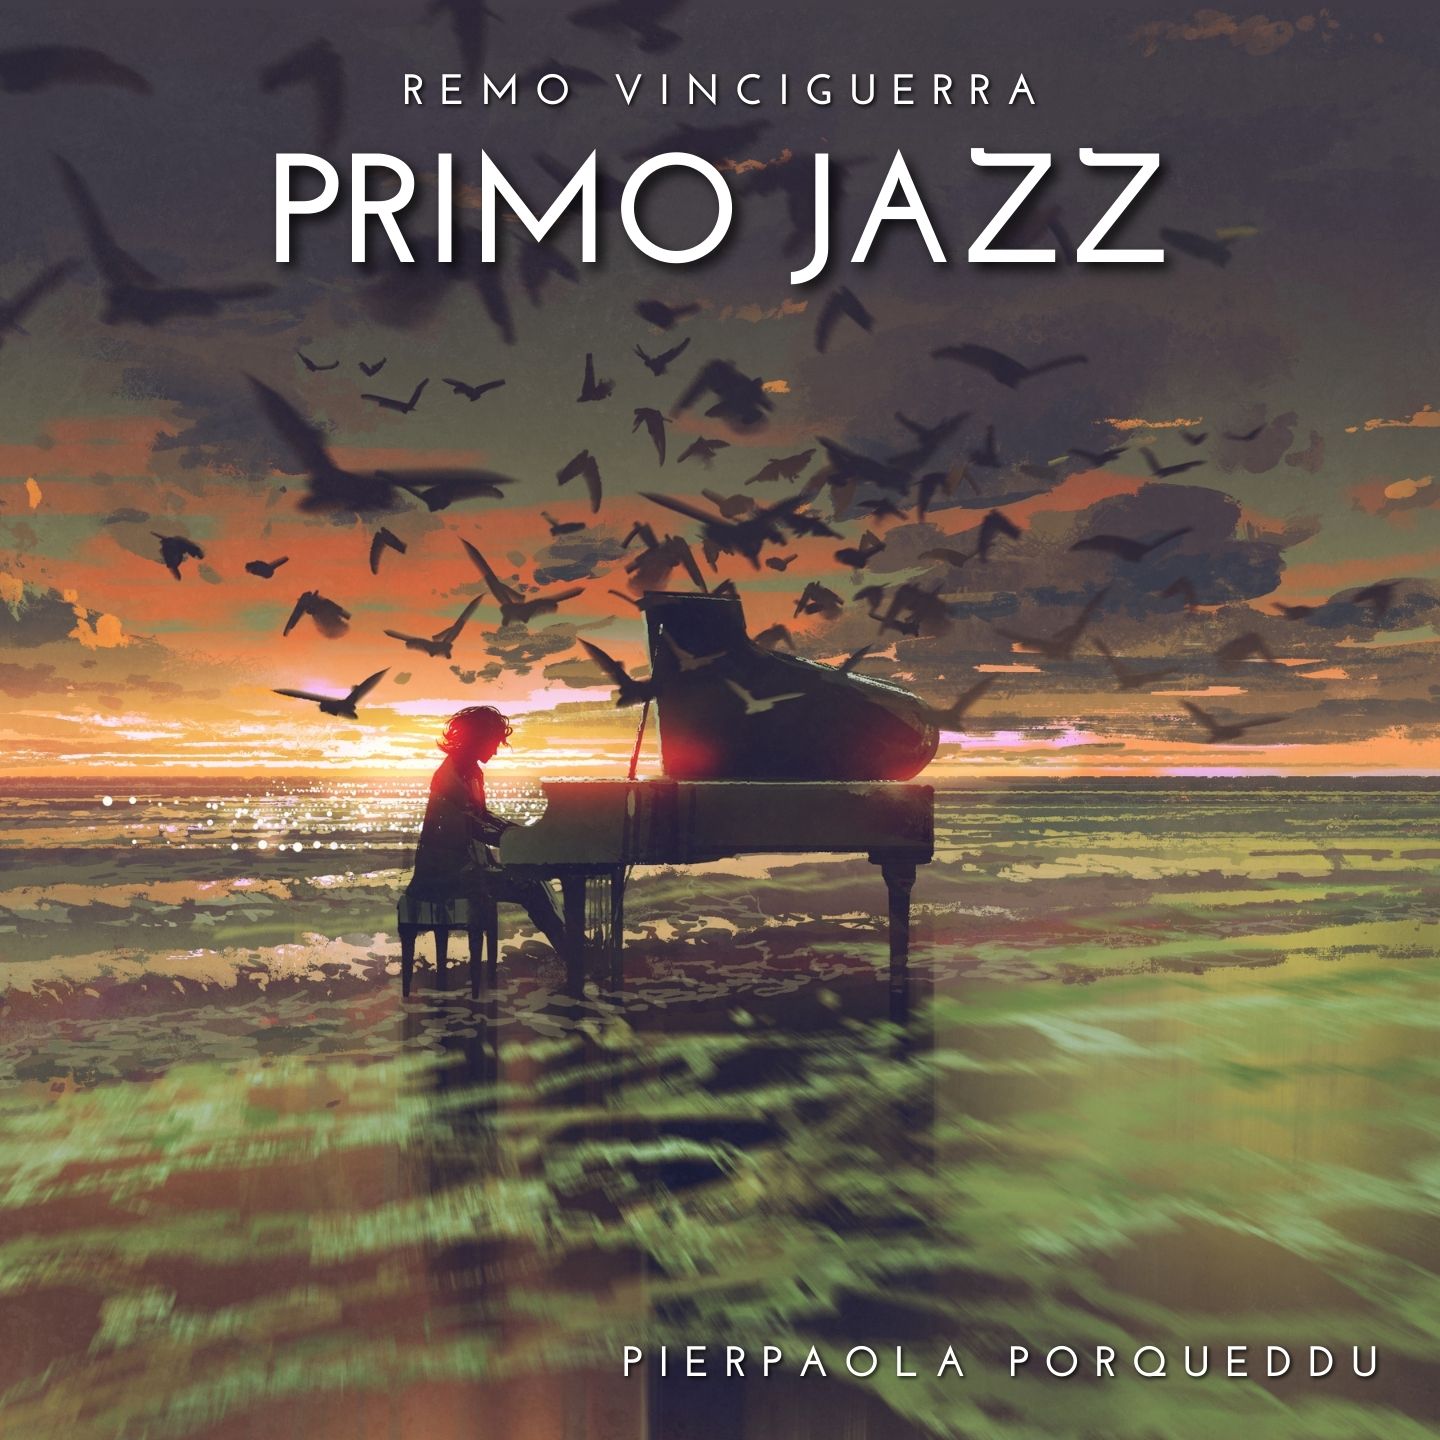 Primo jazz